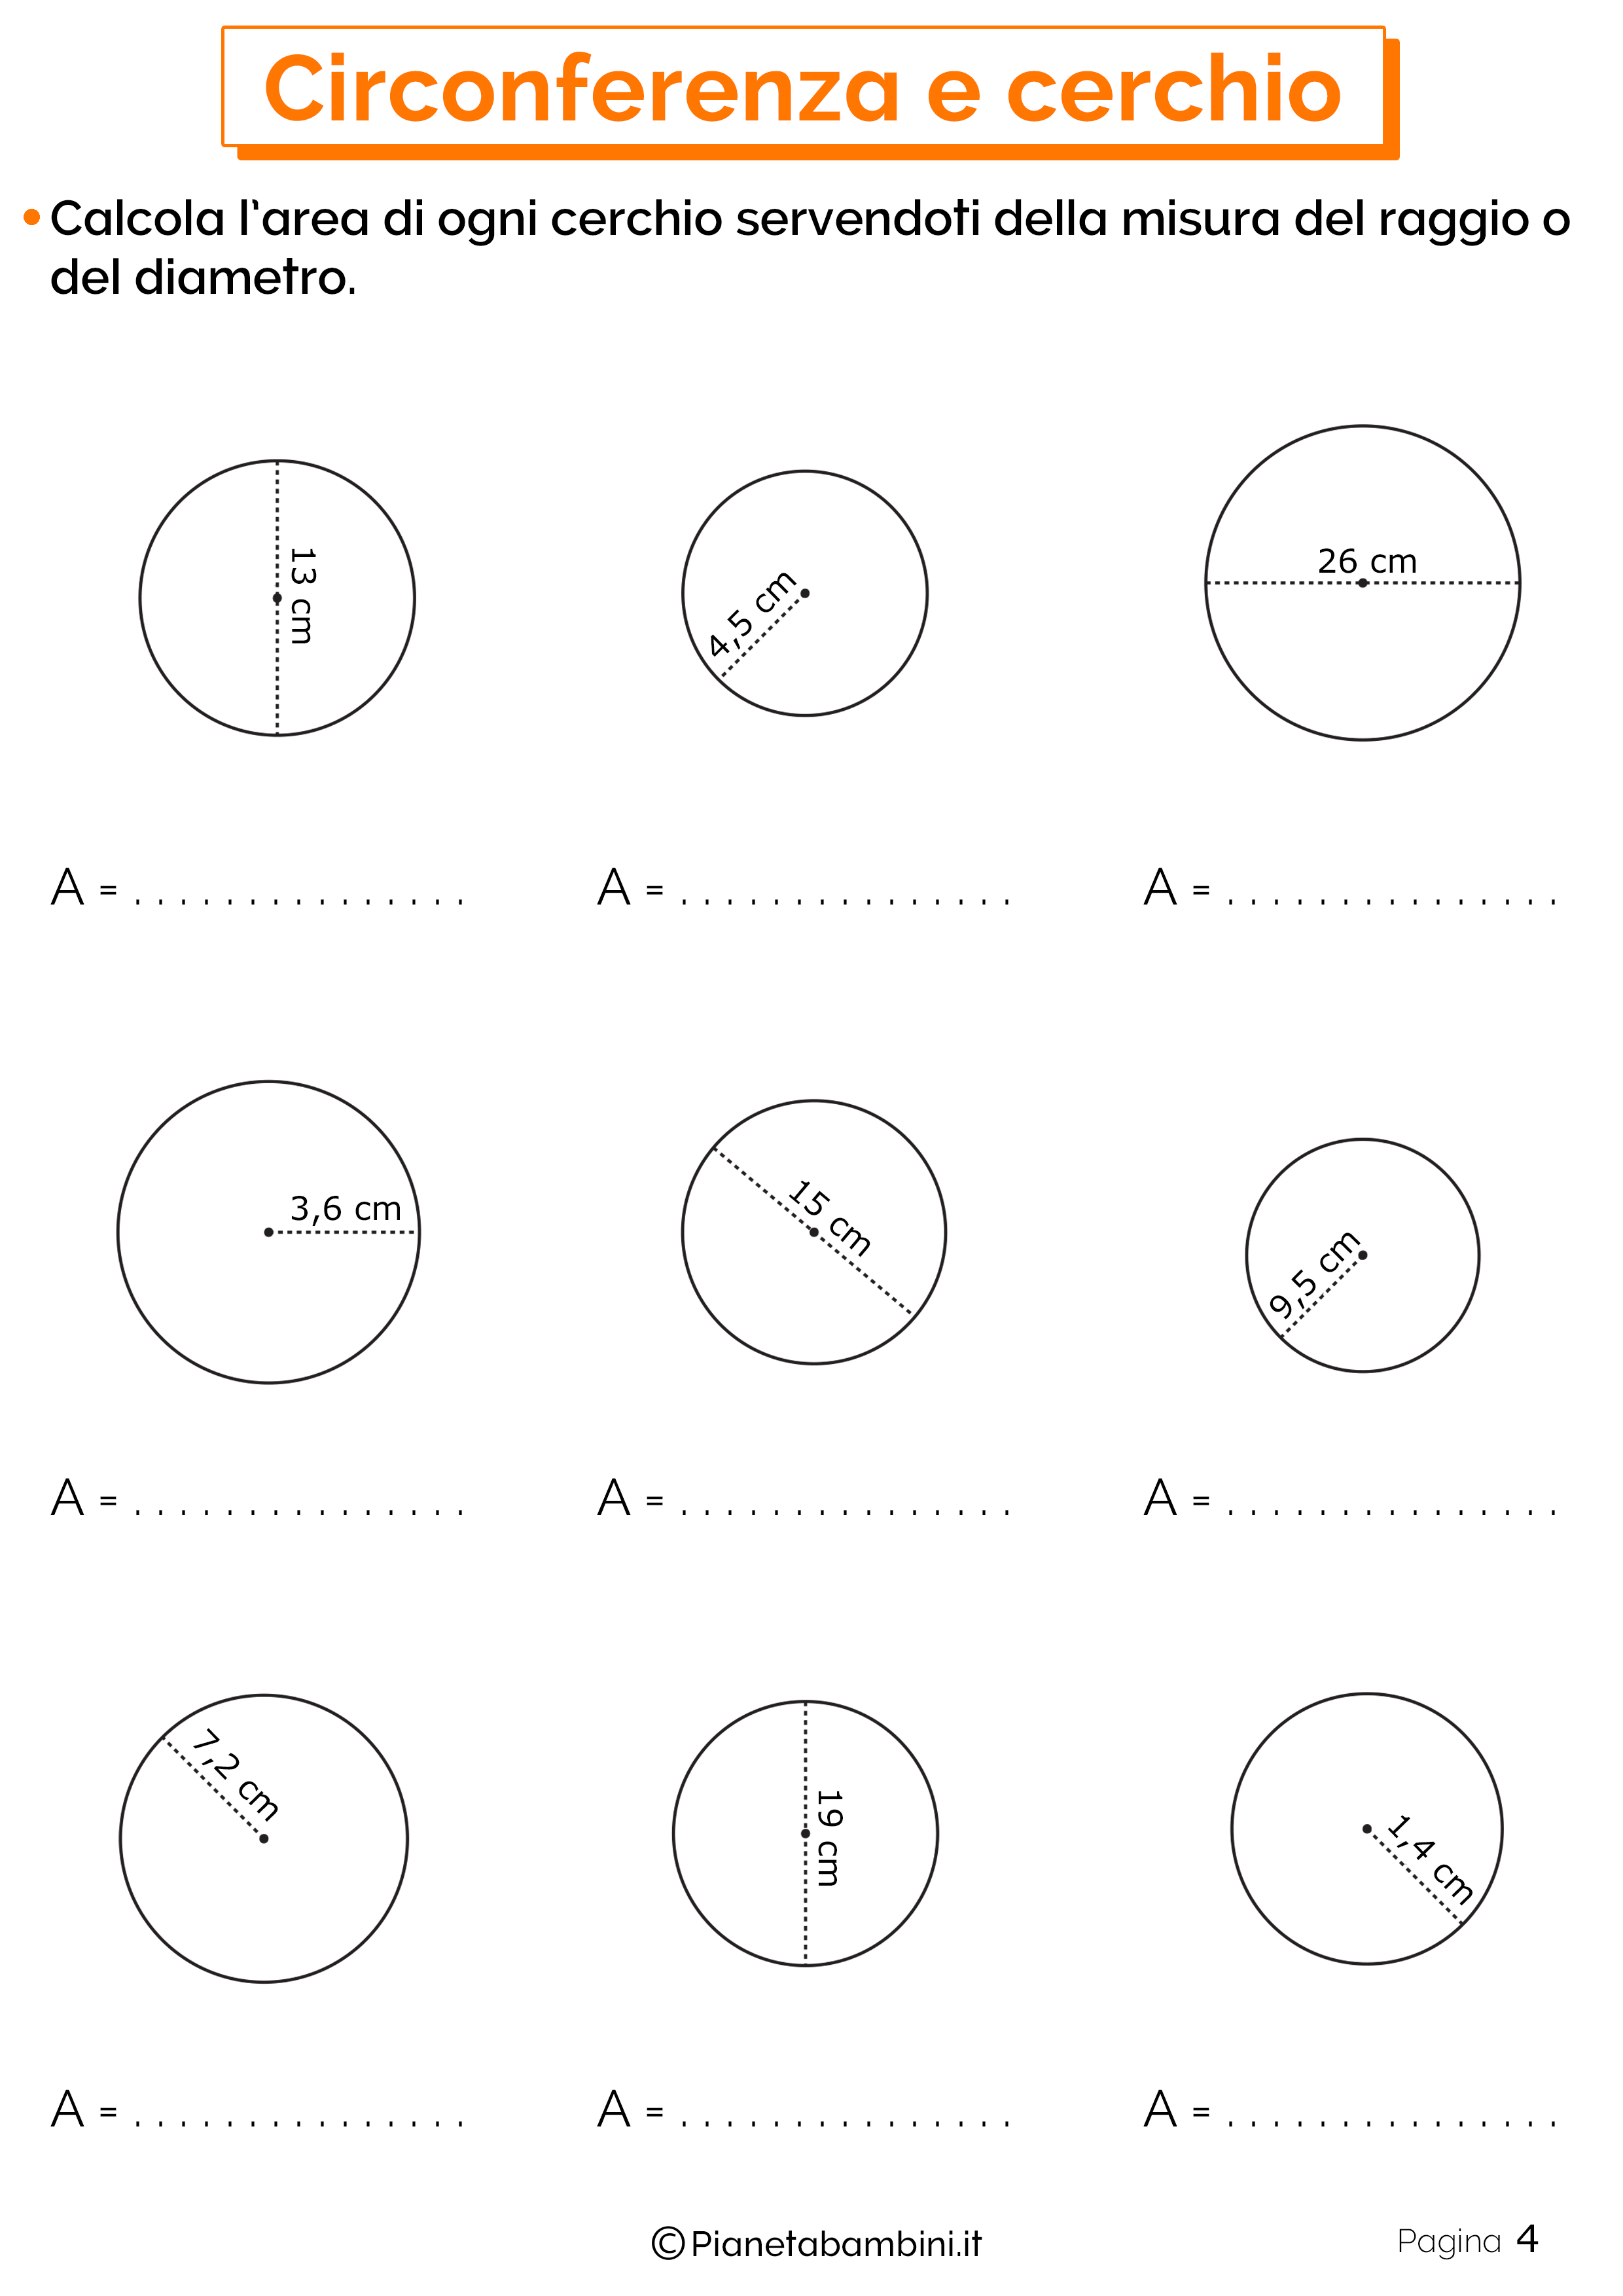 Schede didattiche su circonferenza e cerchio 4